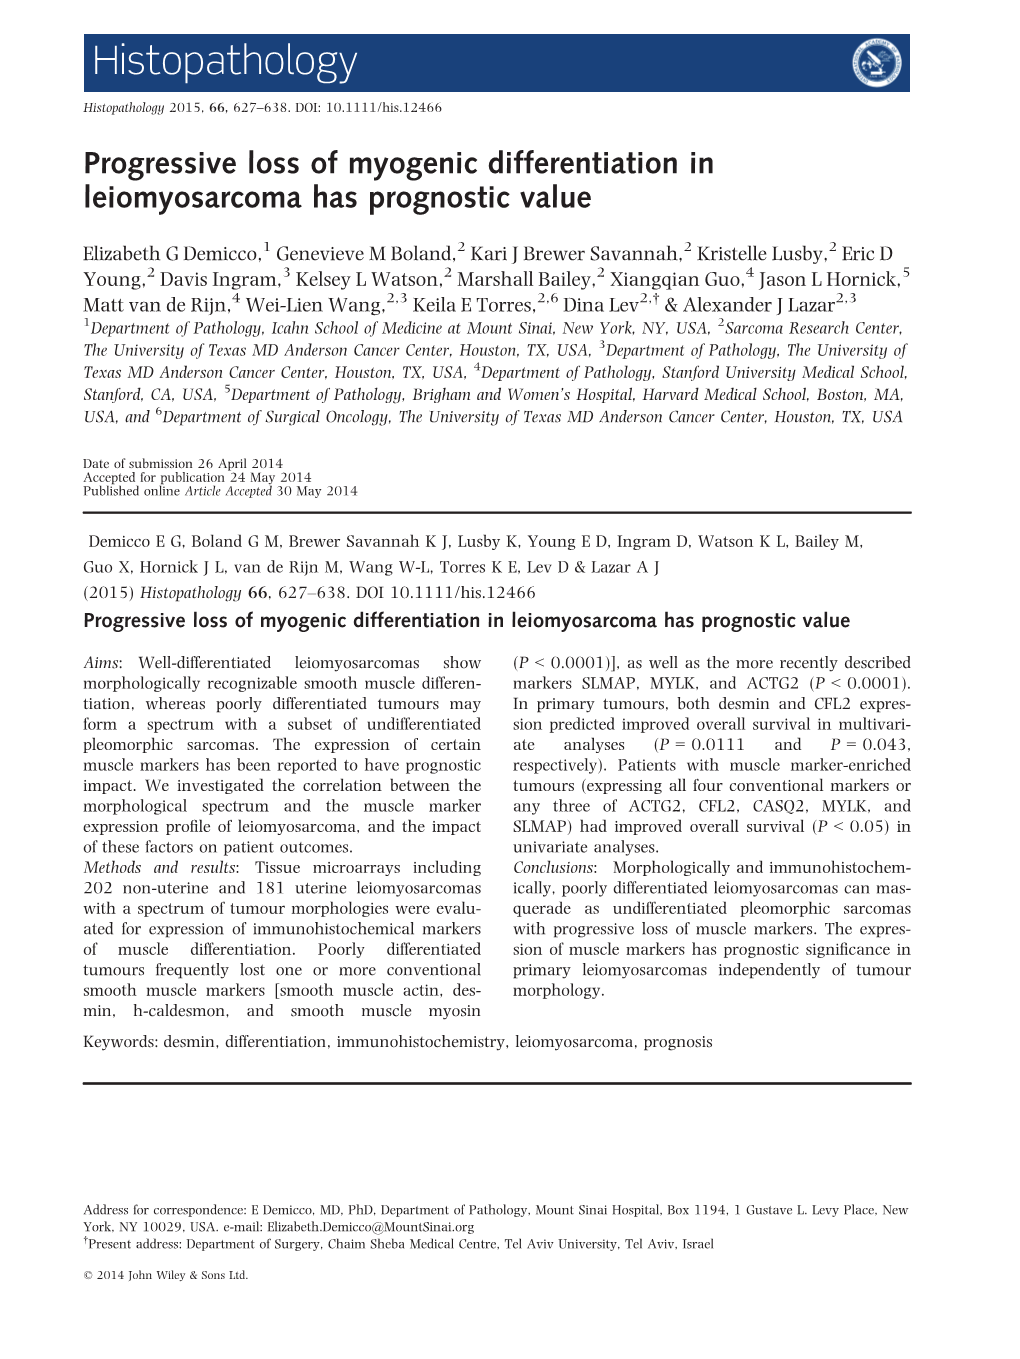 Progressive Loss of Myogenic Differentiation in Leiomyosarcoma Has Prognostic Value